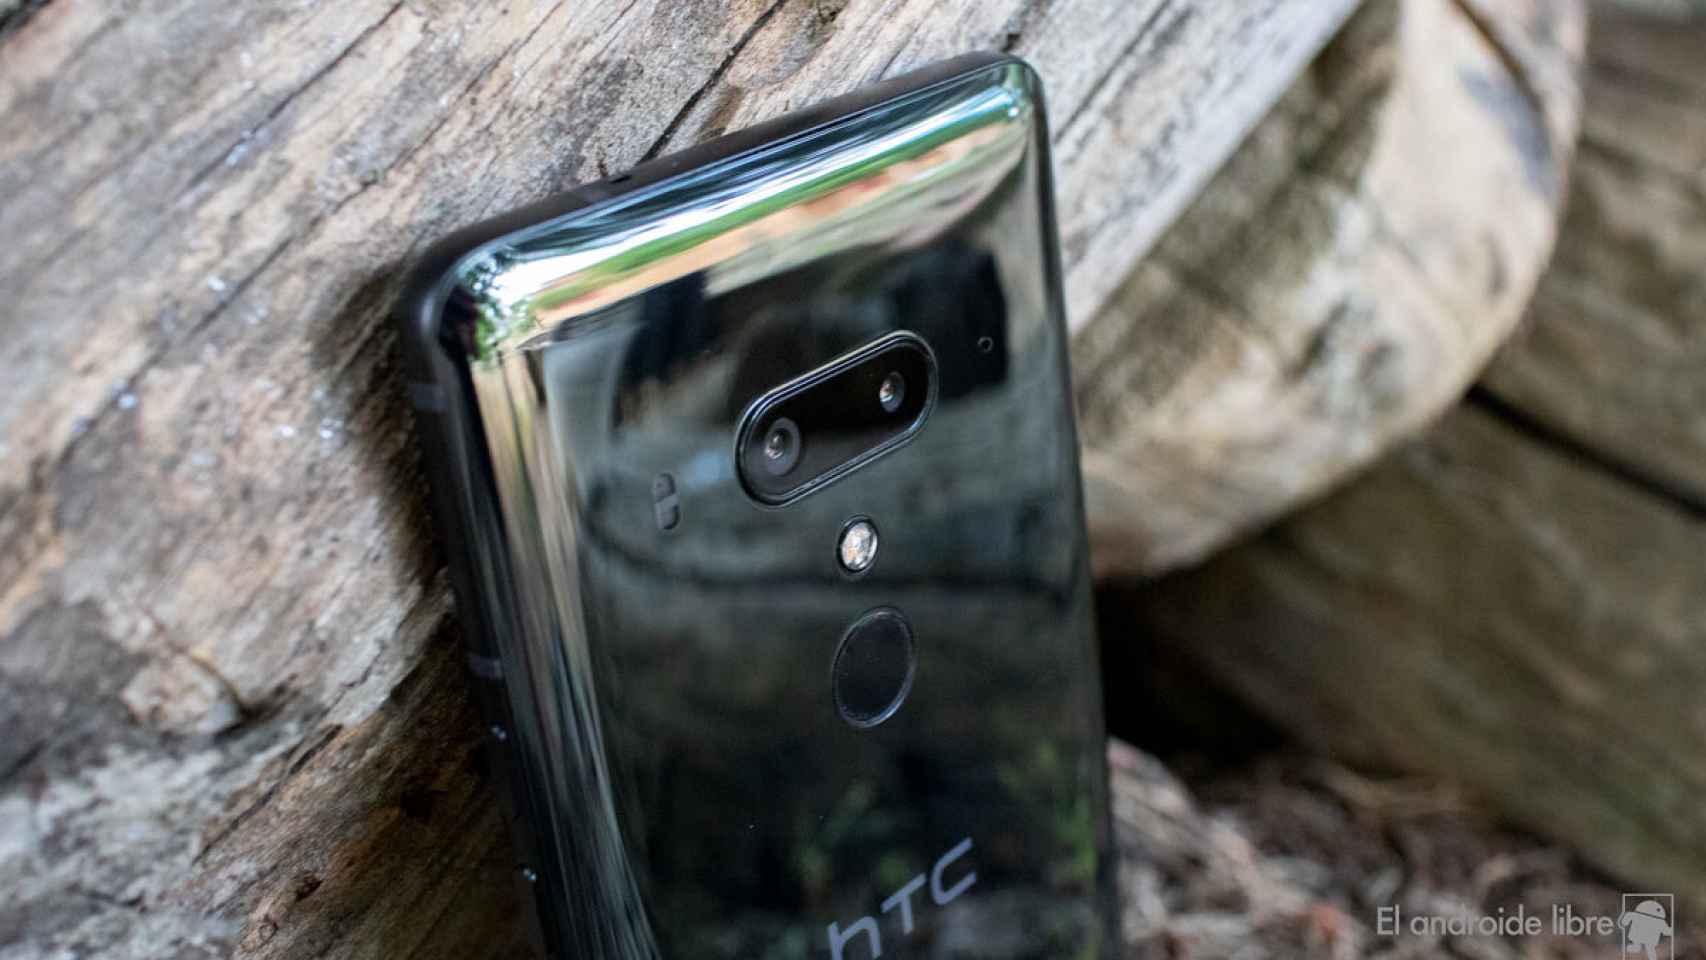 Análisis del HTC U12+, un móvil potente que no sorprende solo por eso